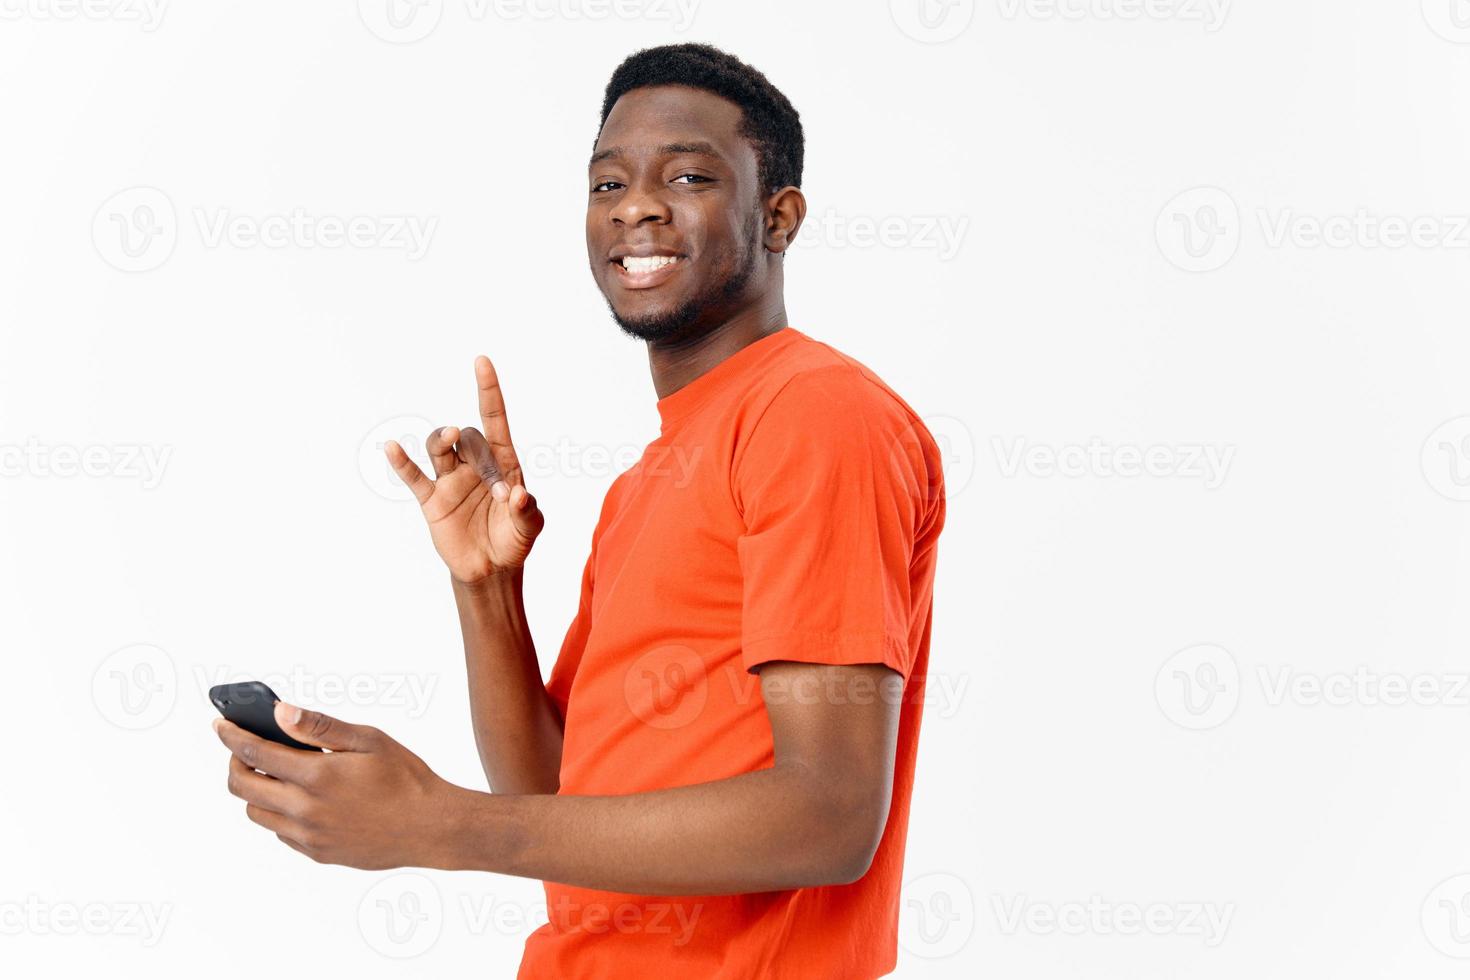 Lycklig kille av afrikansk utseende gestikulerar med hans händer och innehav en mobil telefon på en ljus bakgrund foto